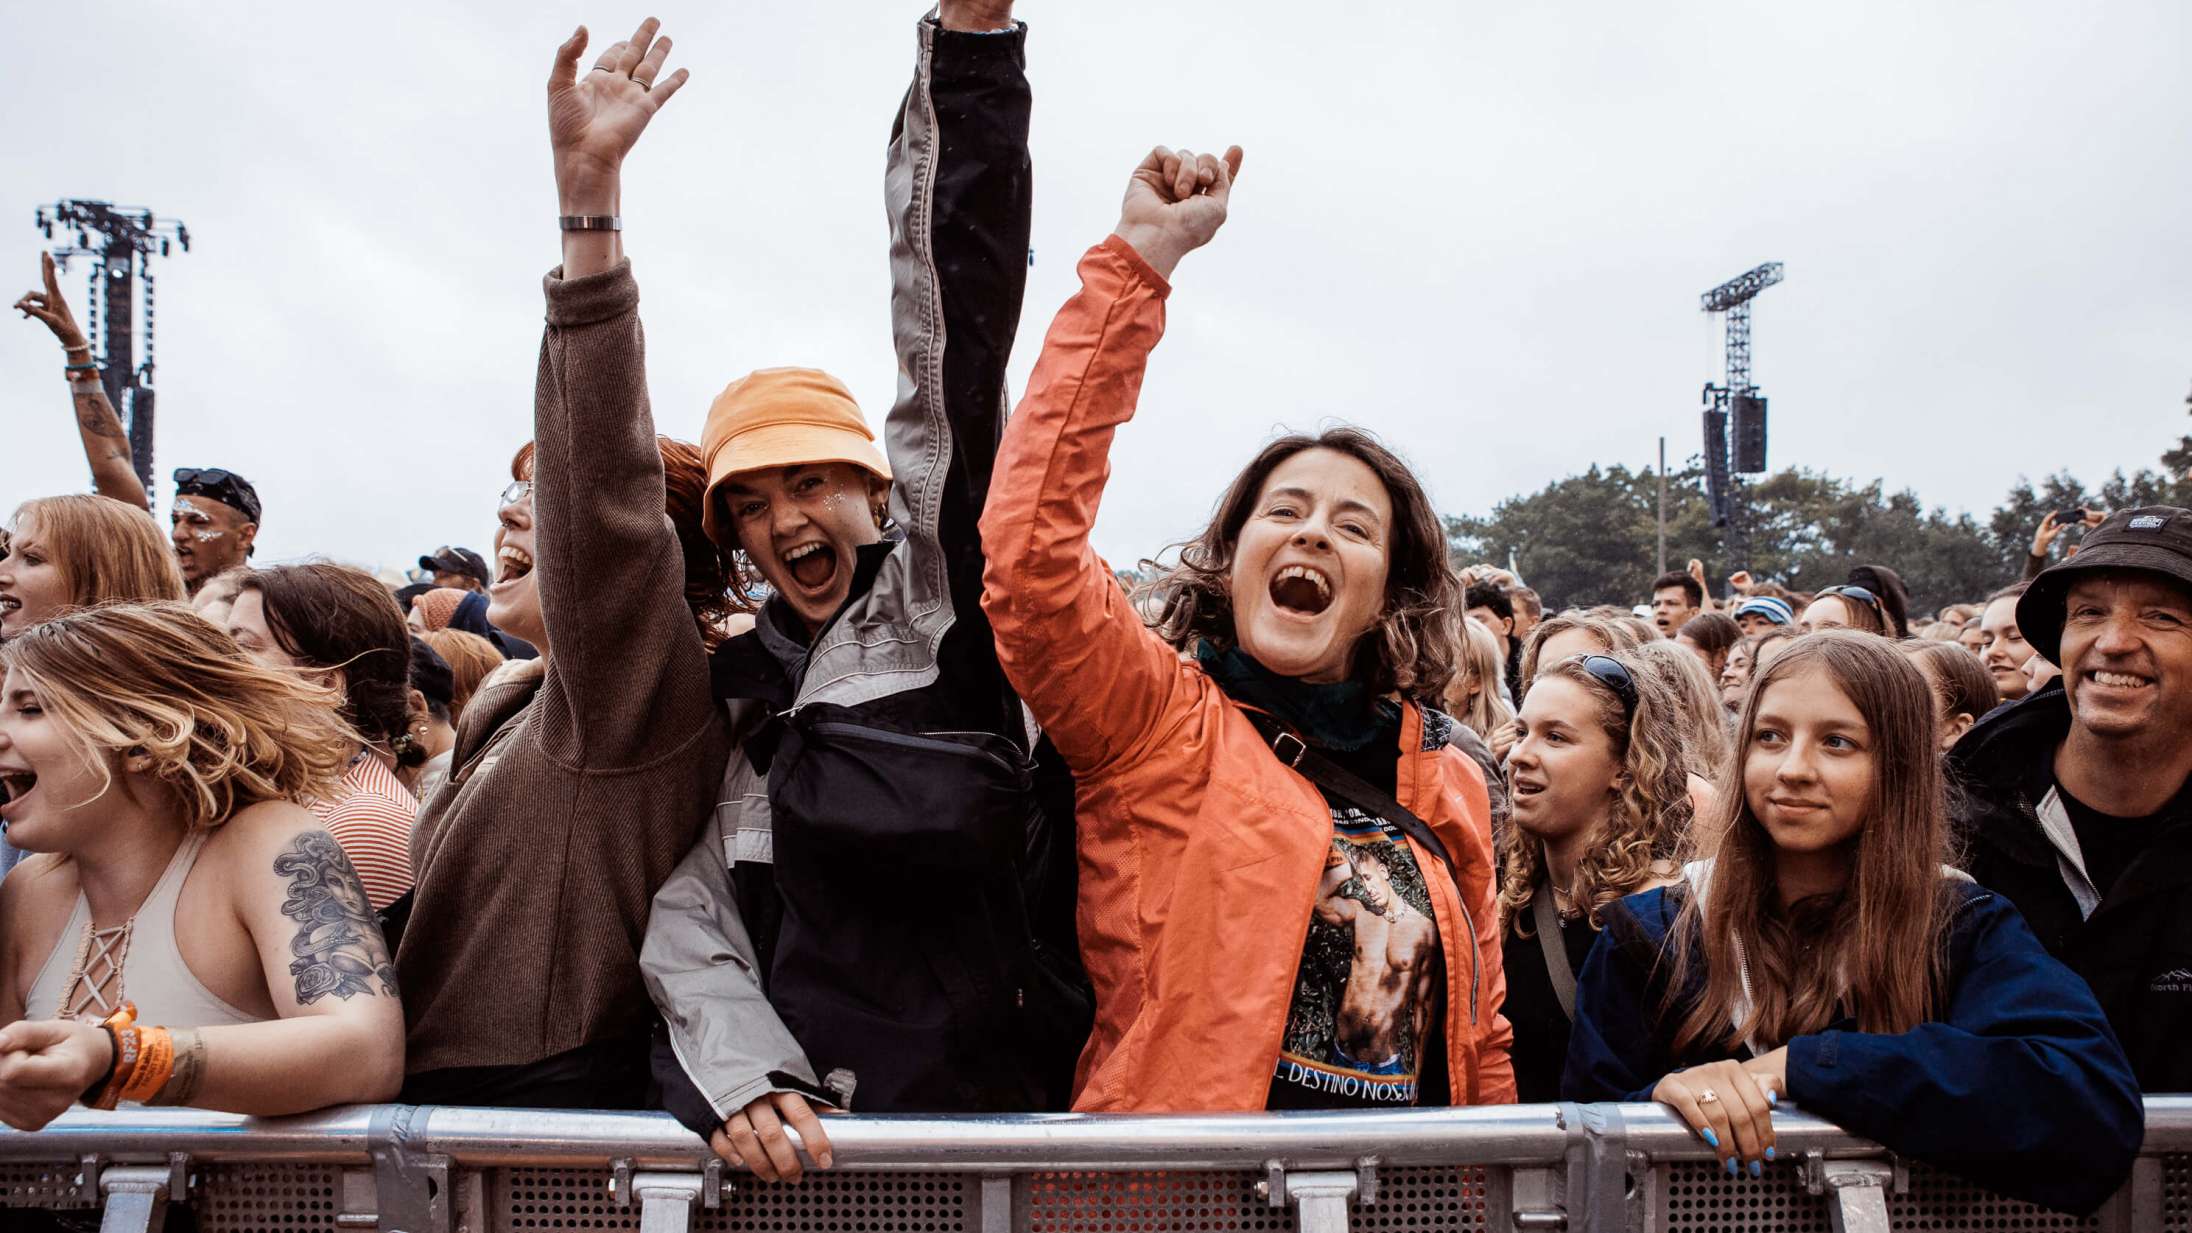 Seks Instagram-øjeblikke der giver akut Roskilde-blues – og fire der kurerer den